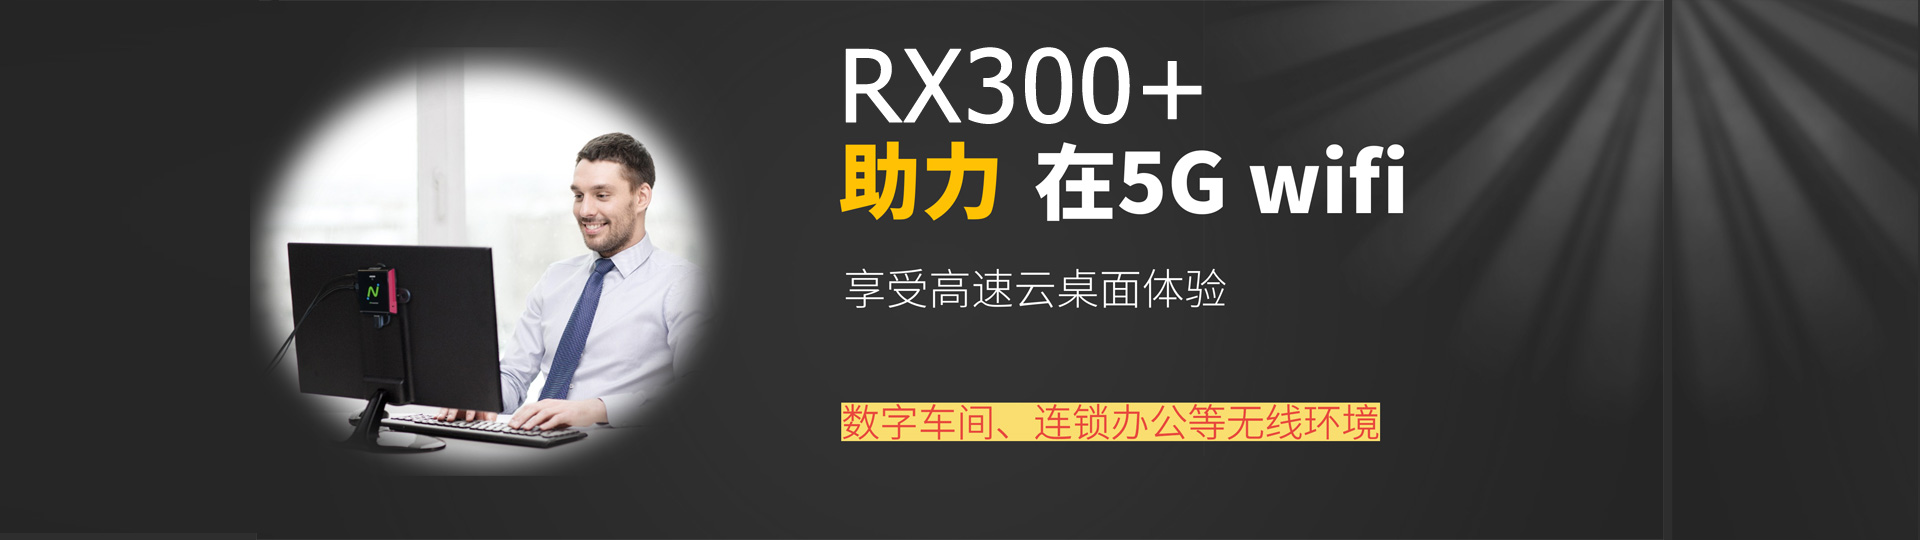 RX300+5Gwifi云电脑